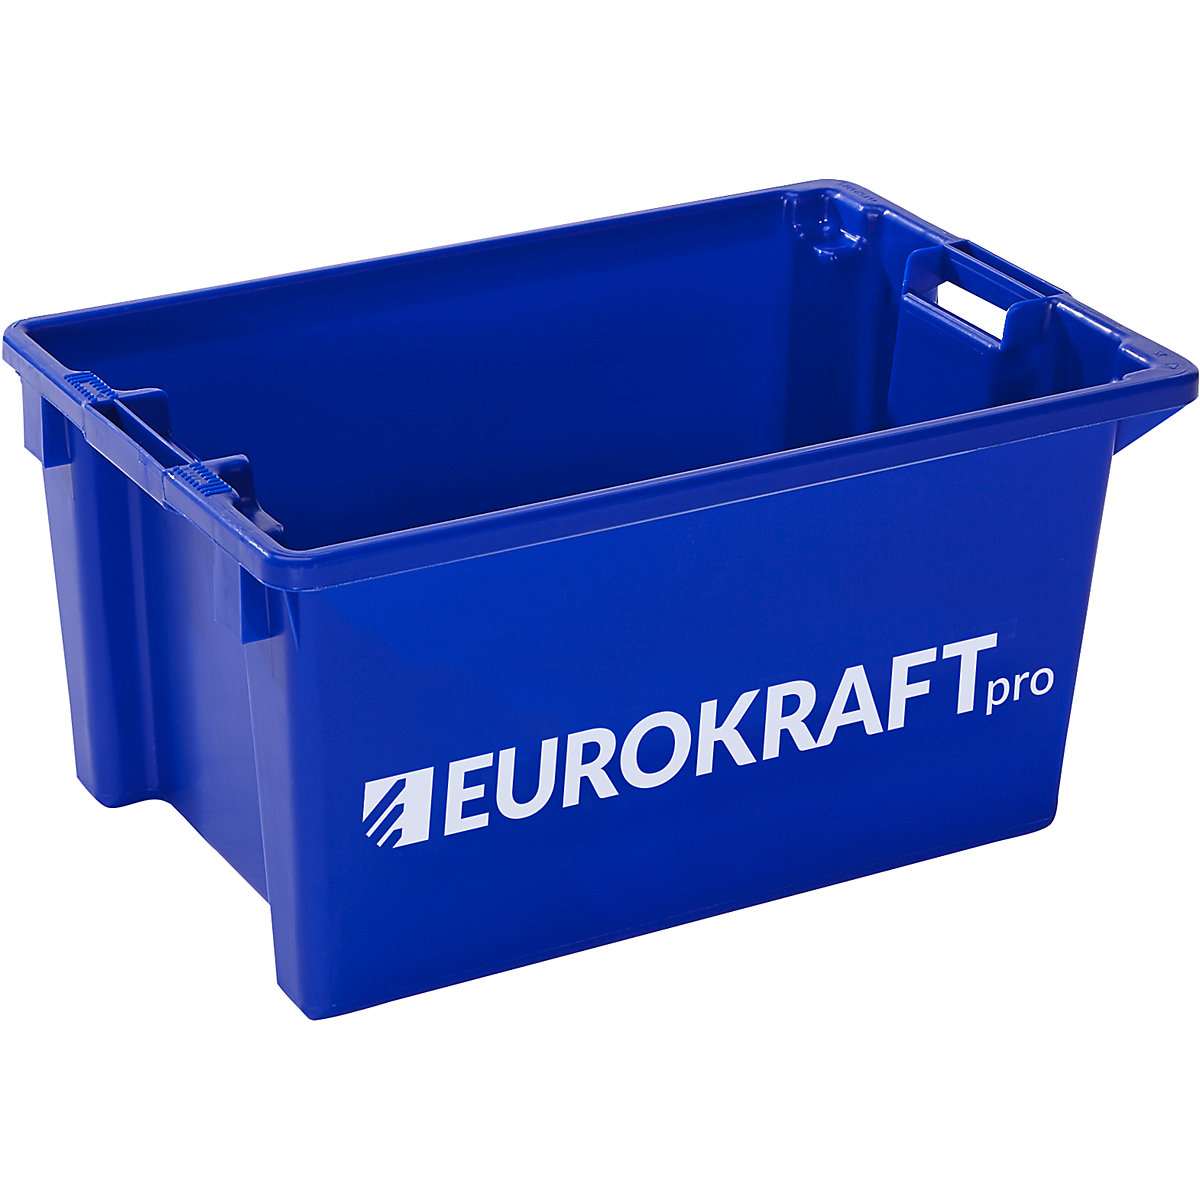 Contenitori impilabili e girevoli – eurokraft pro, volume 50 l, conf. da 3 pezzi, blu